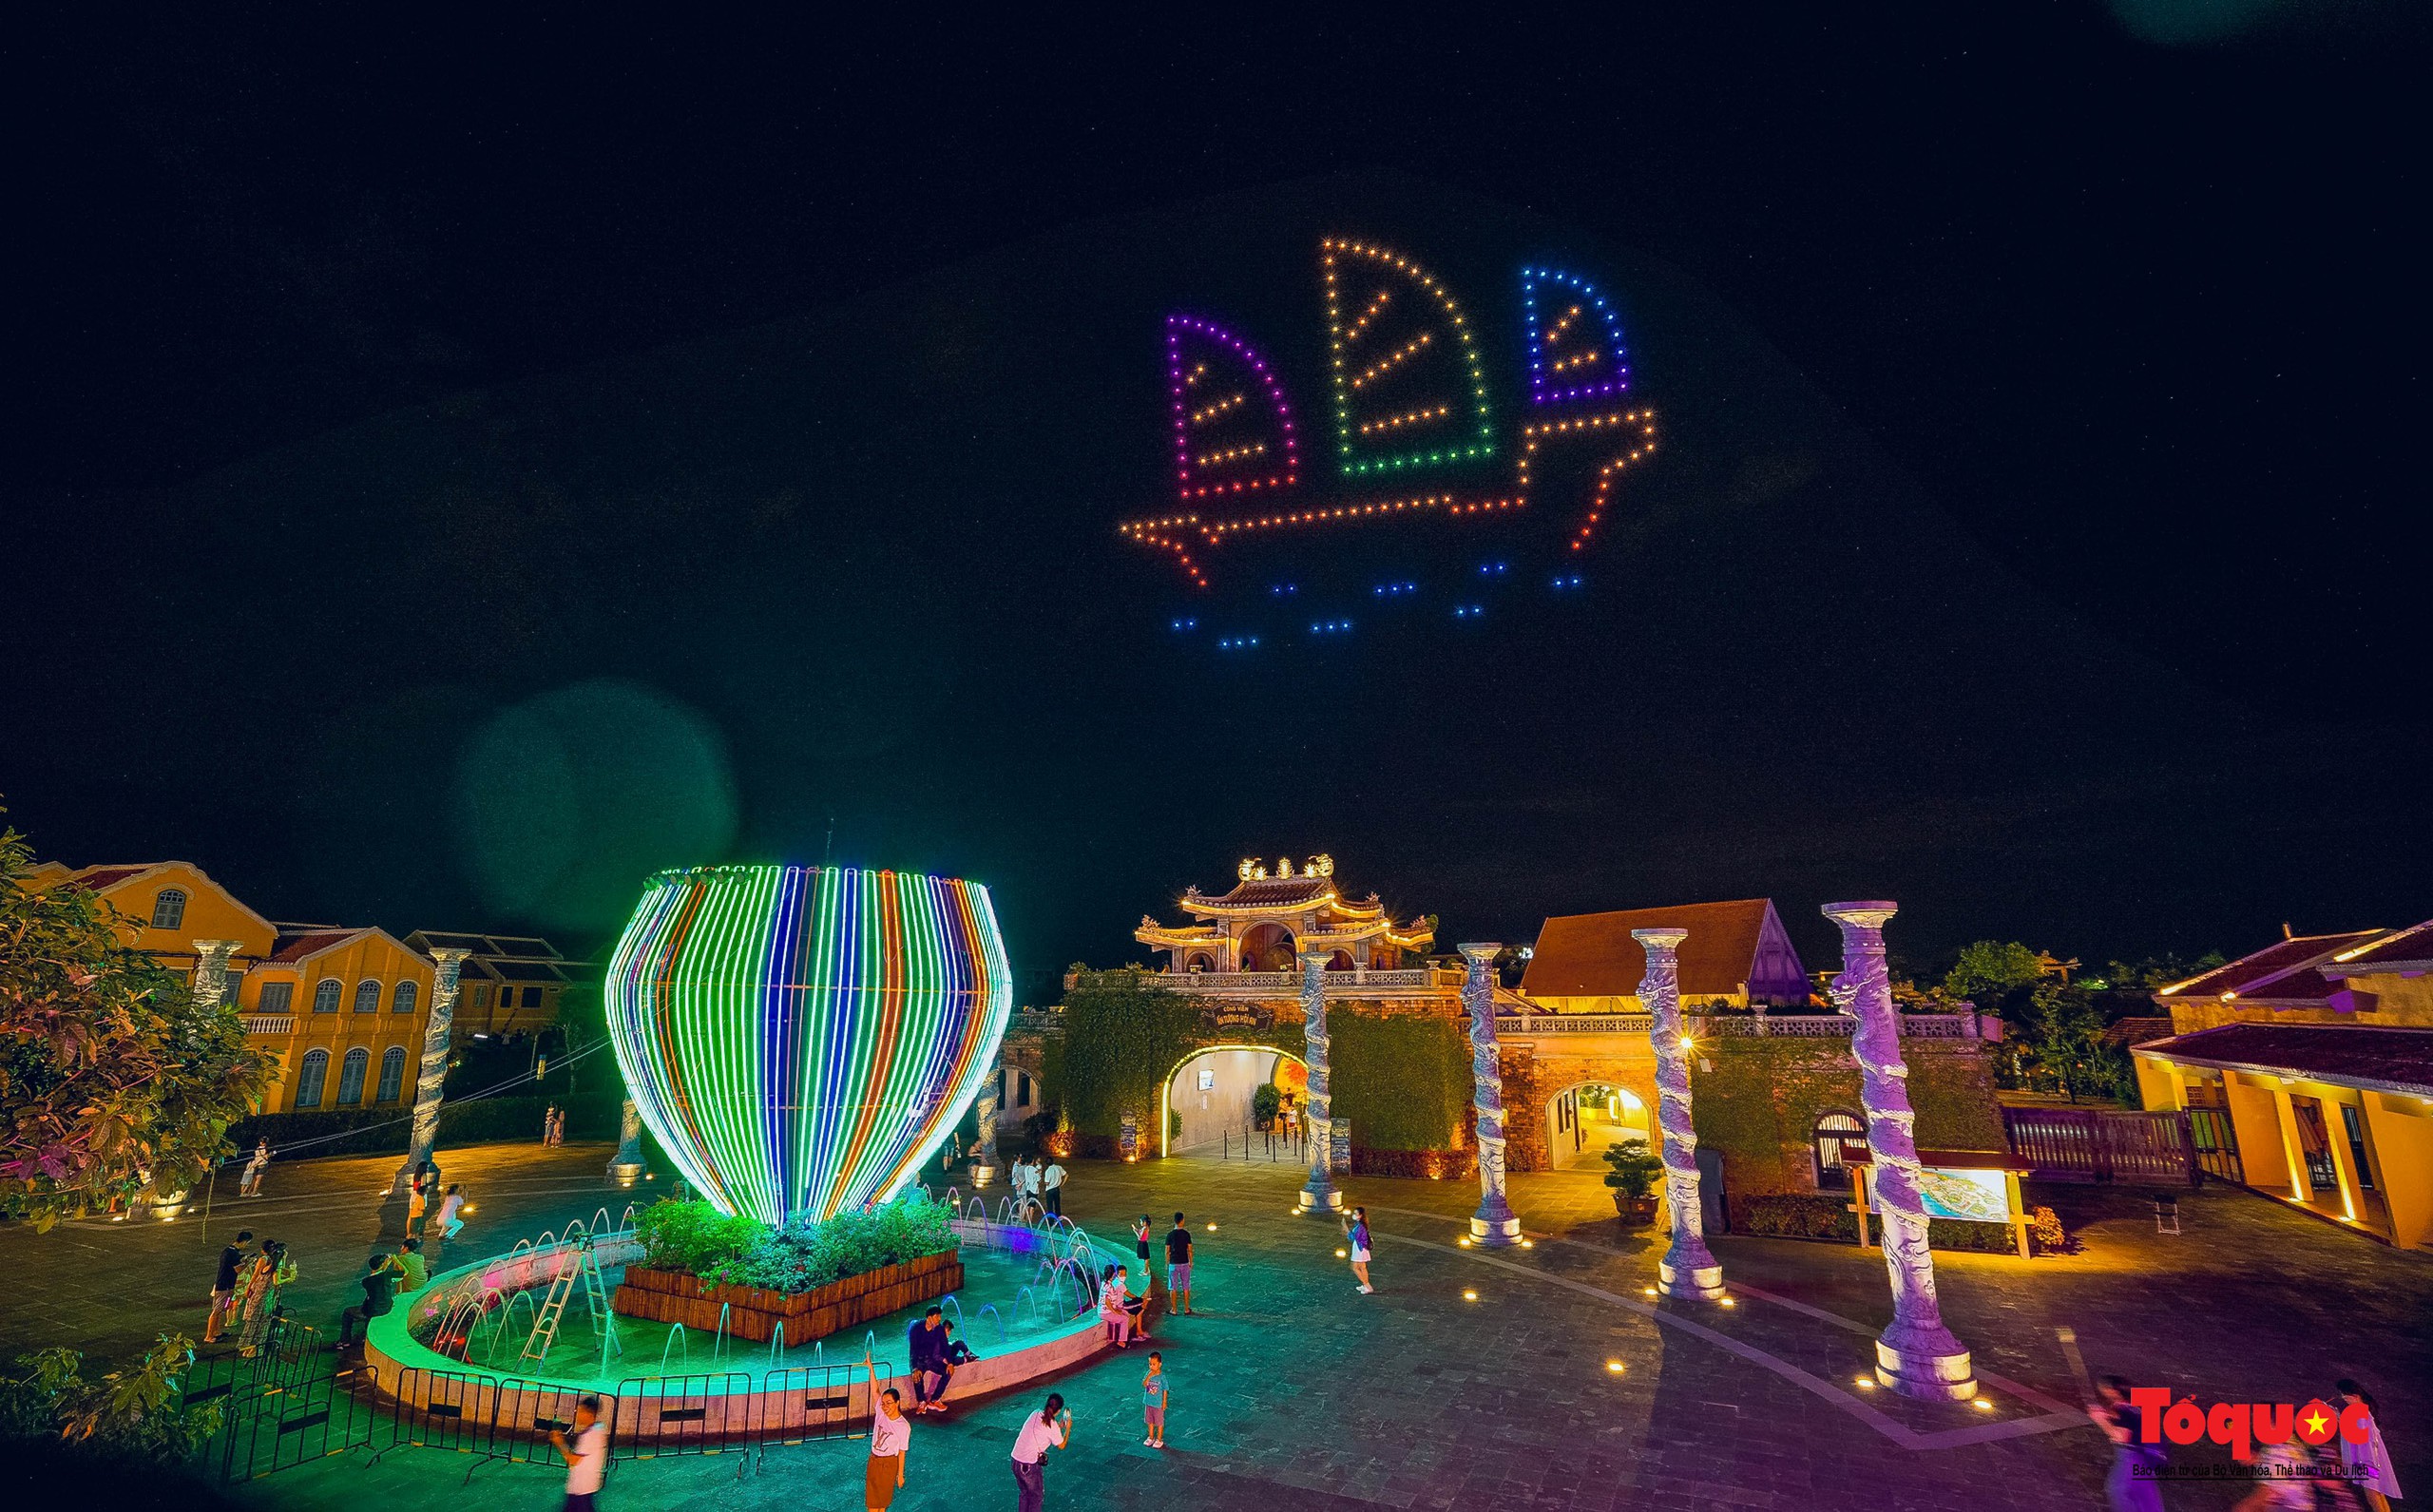 Mãn nhãn màn trình diễn ánh sáng drone light “Thắp sáng bầu trời” ở Hội An - Ảnh 1.